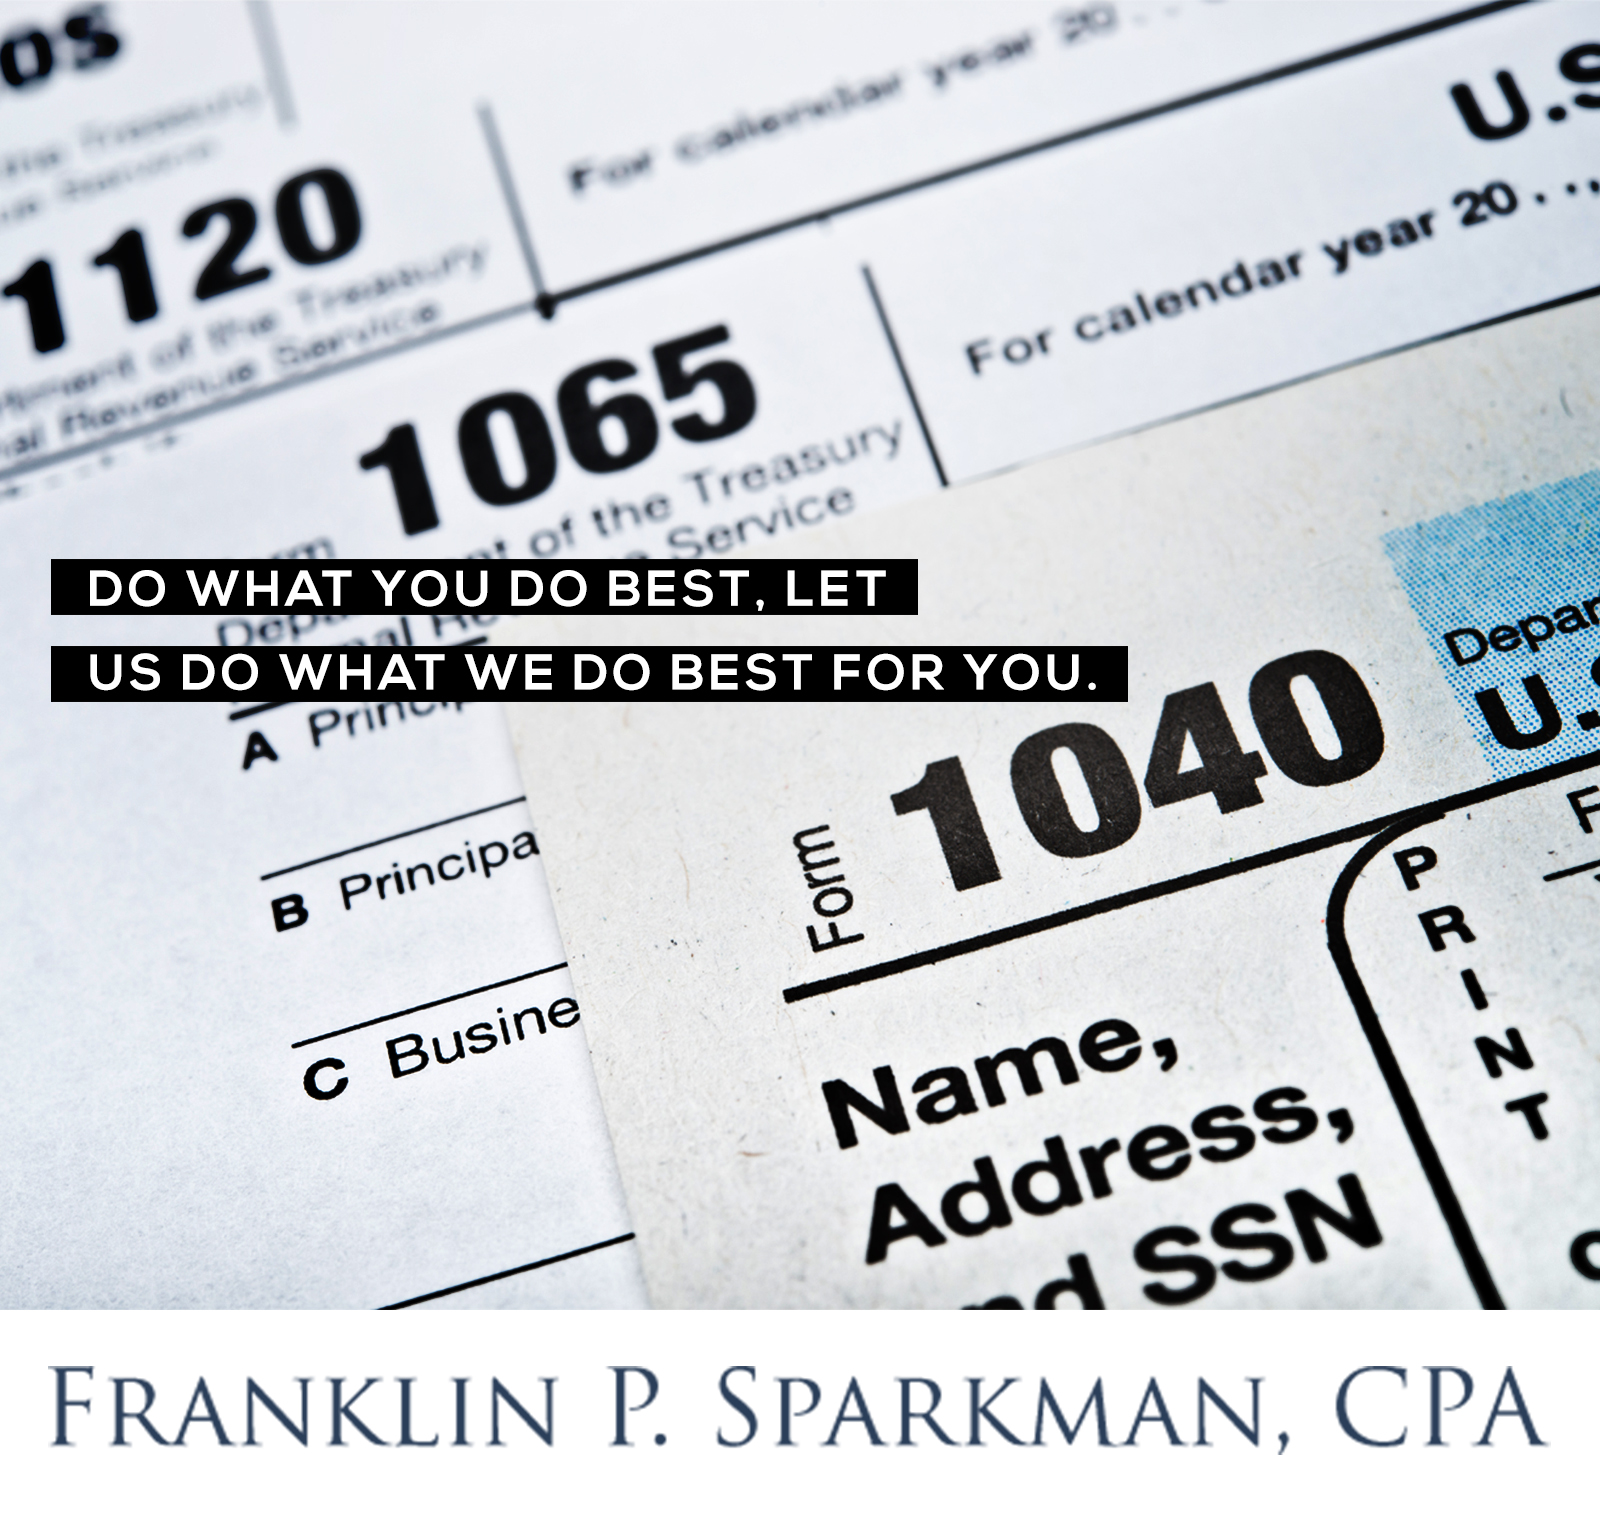 Franklin P. Sparkman, CPA